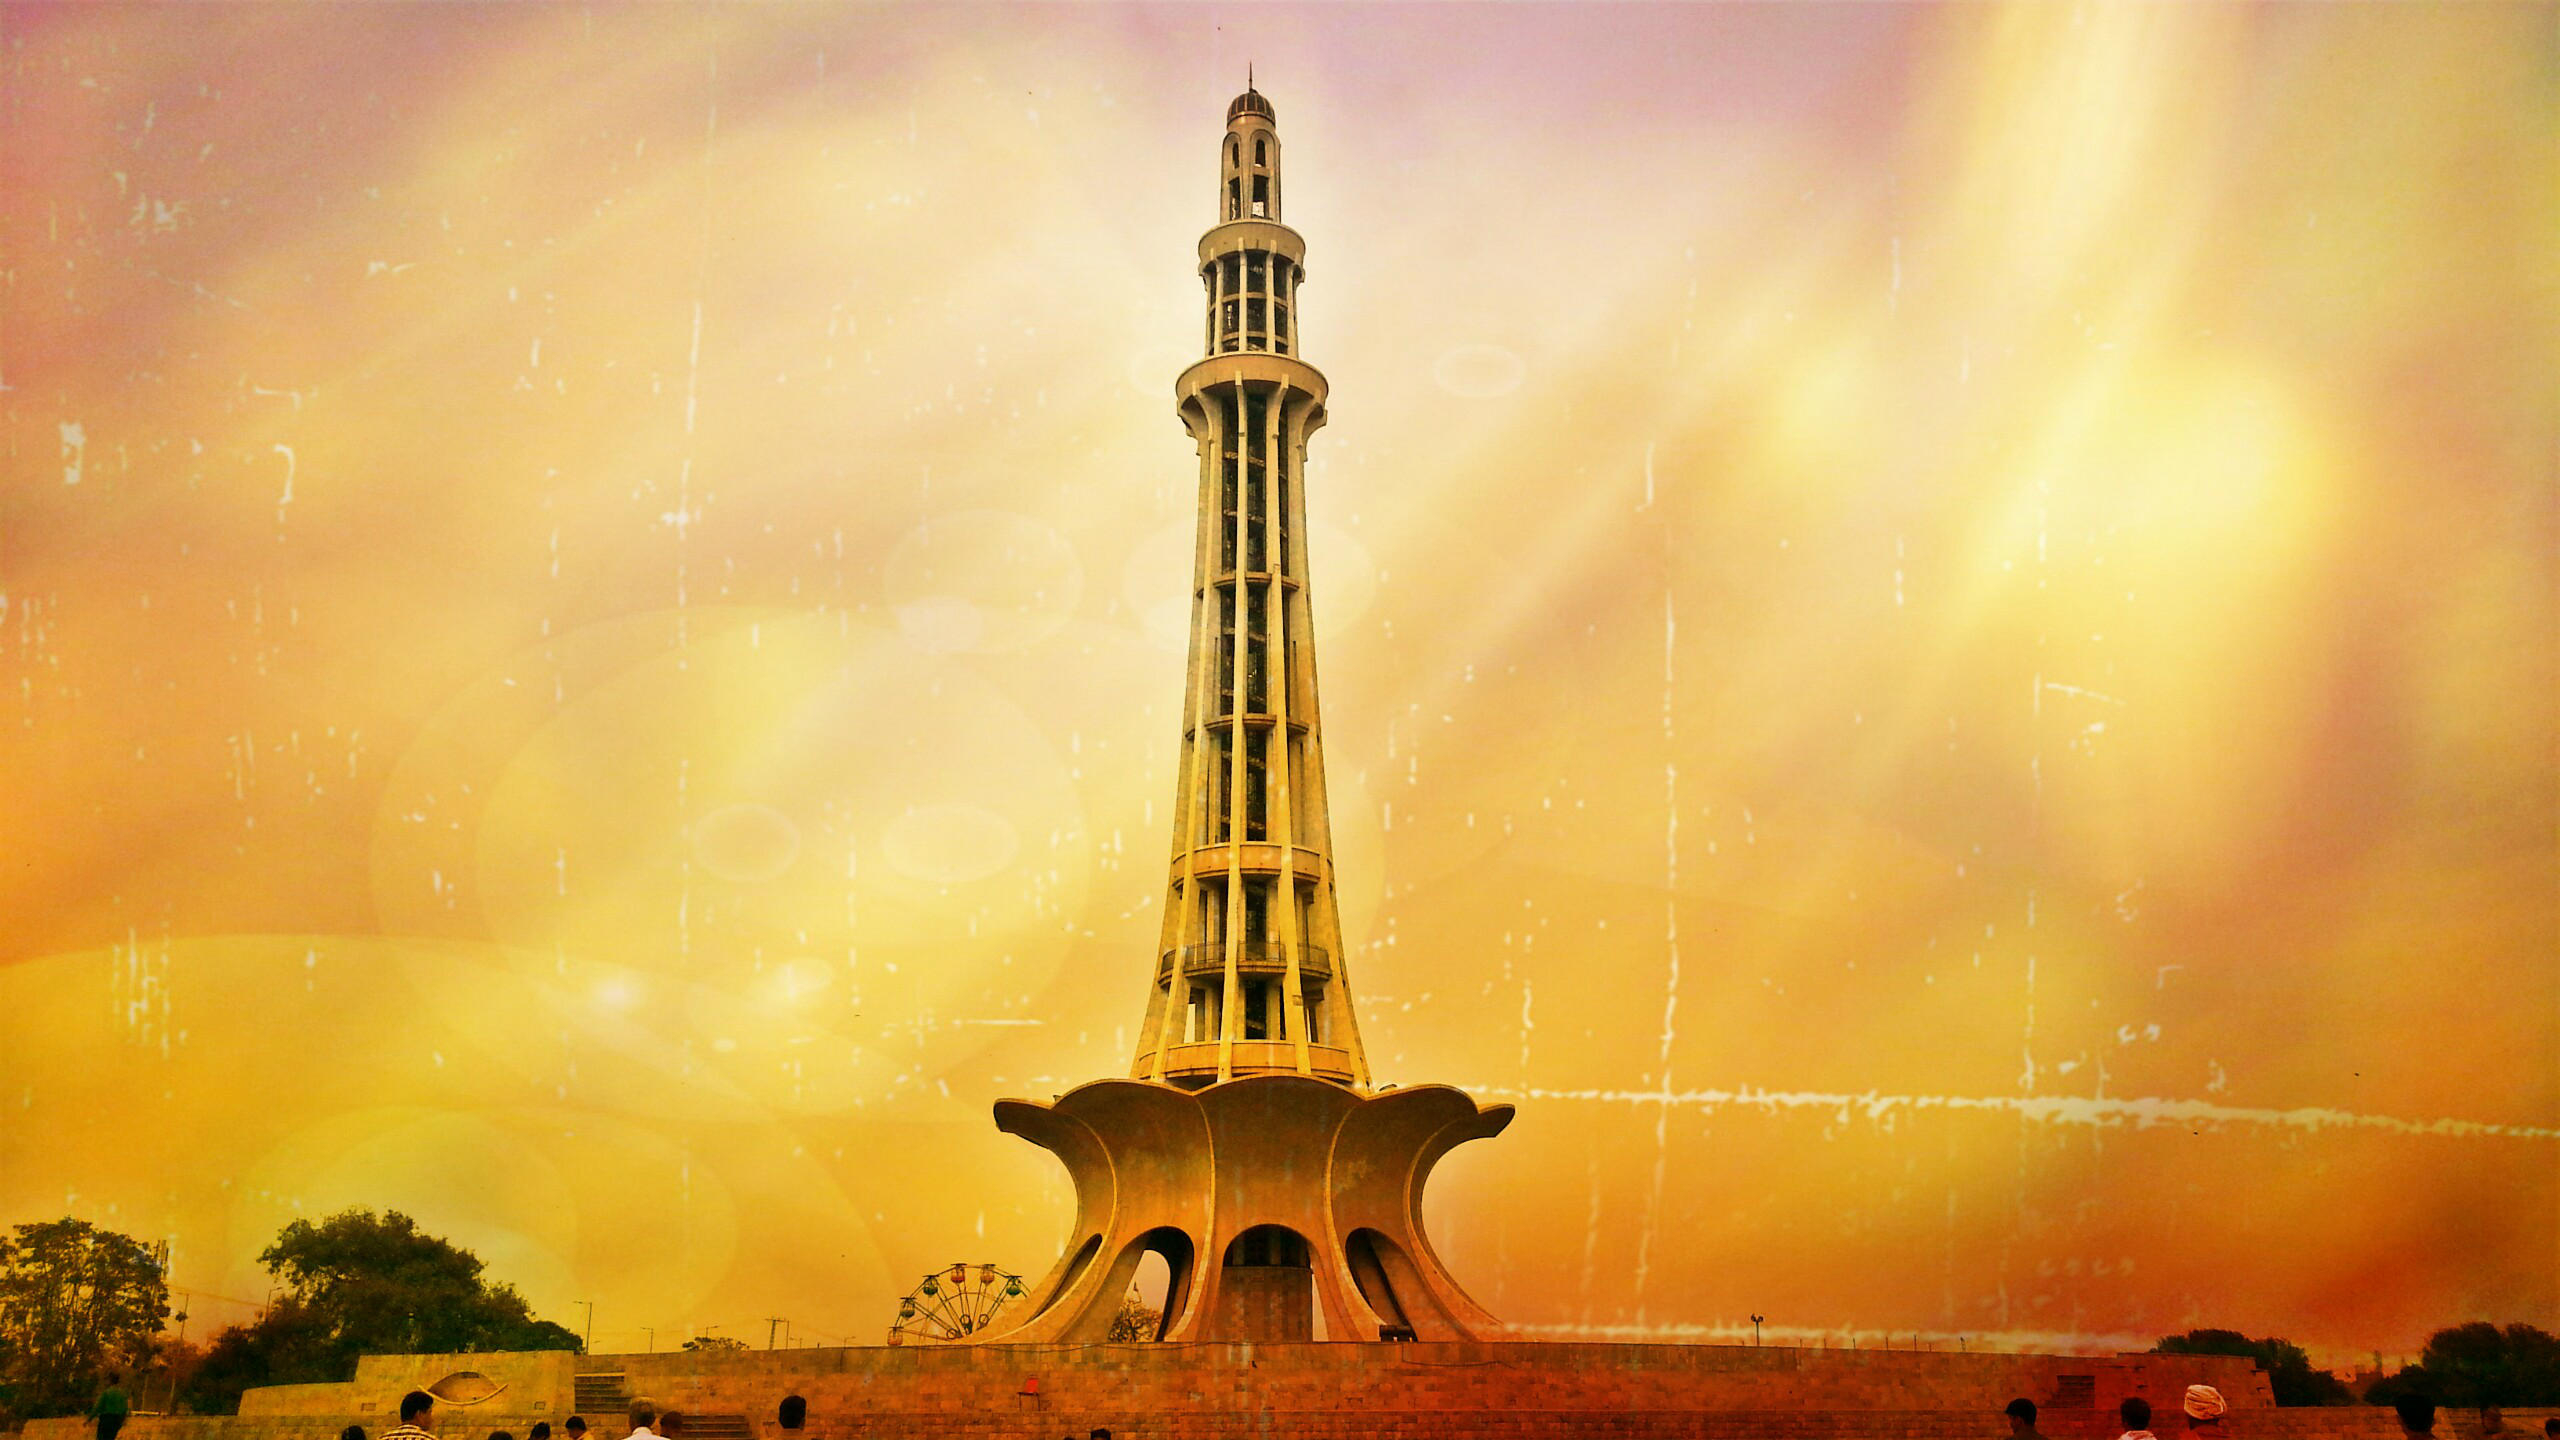 2560x1440 Minar e Pakistan Wallpaper 4 [